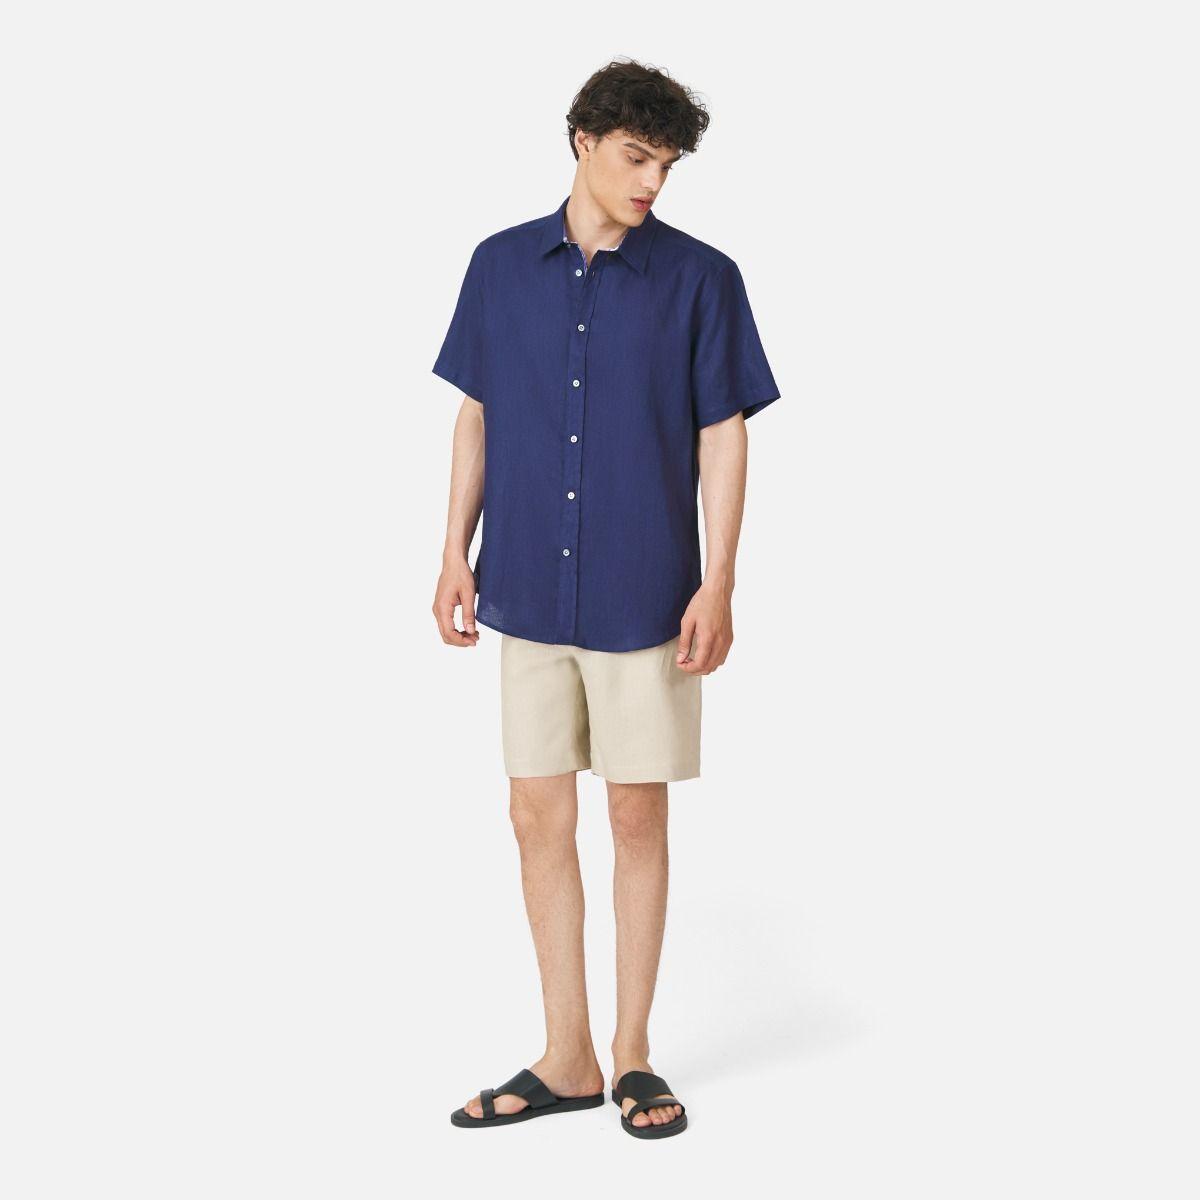 Bamboo Collar Classic Short Sleeve Solid Linen Shirt - Navy Blue